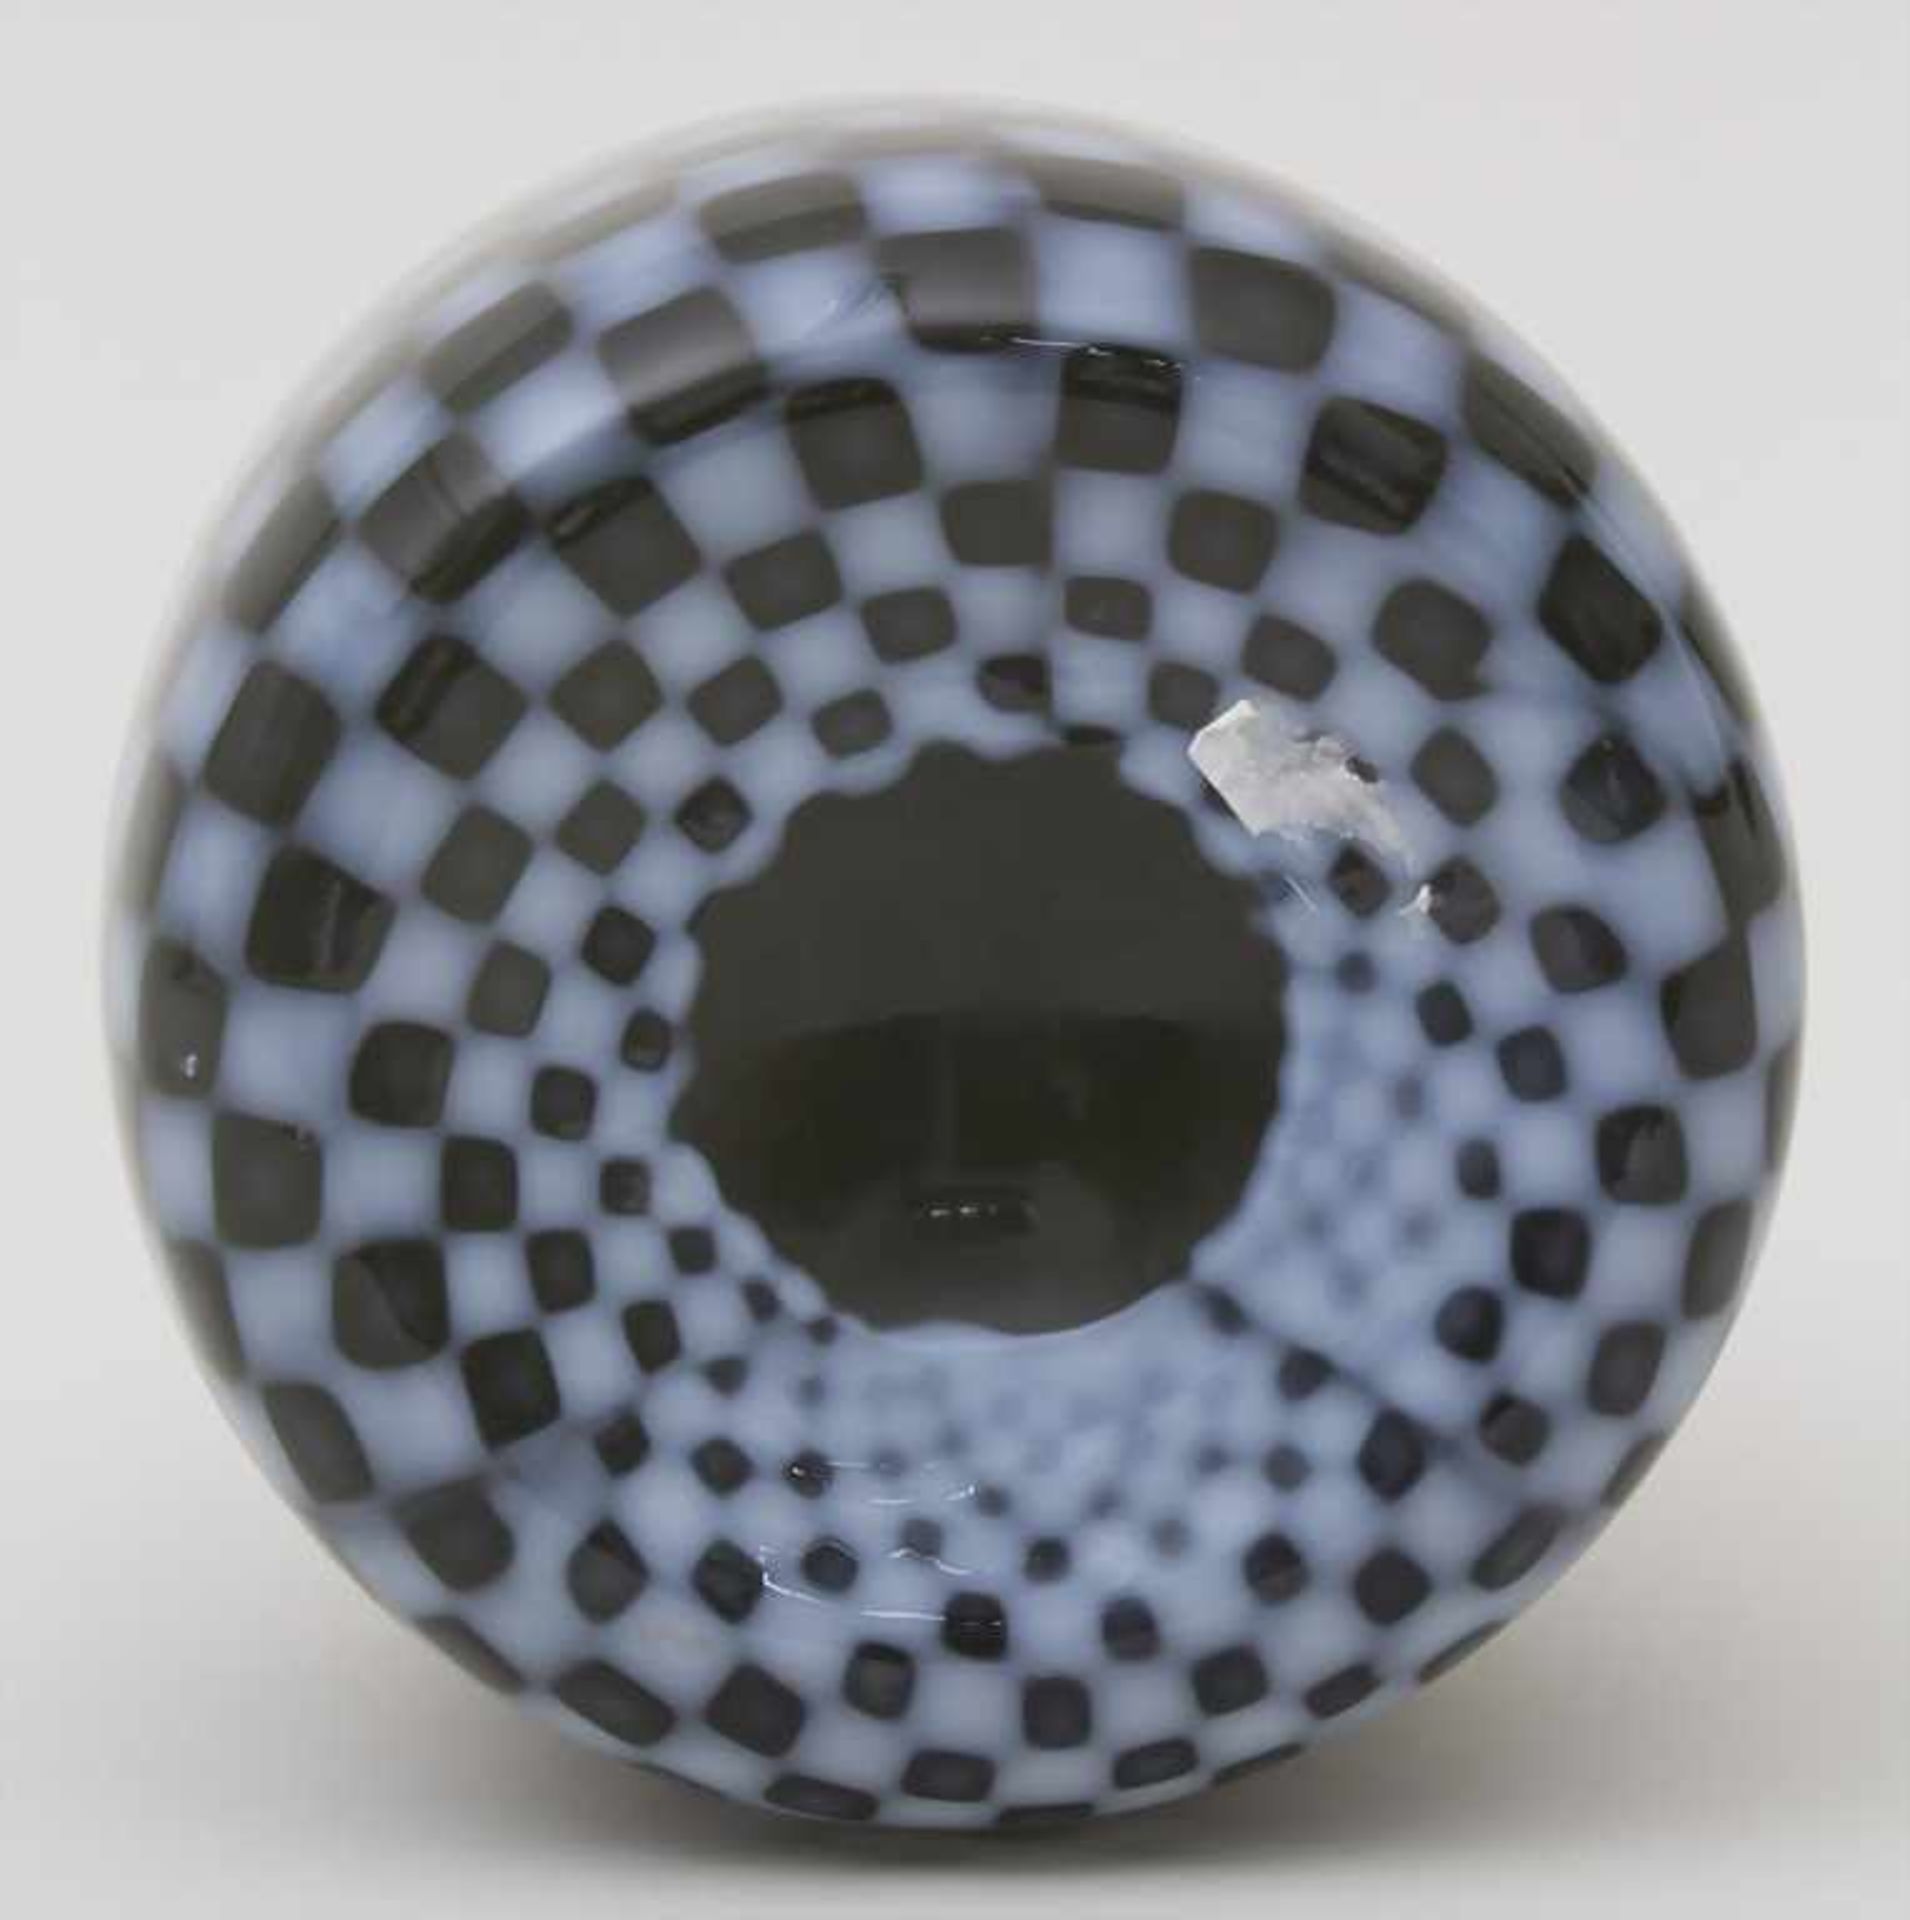 Vase / A vase, wohl Barovier und Toso, Murano, 70/80er JahreMaterial: rauchfarbenes Glas, opak - Bild 4 aus 4